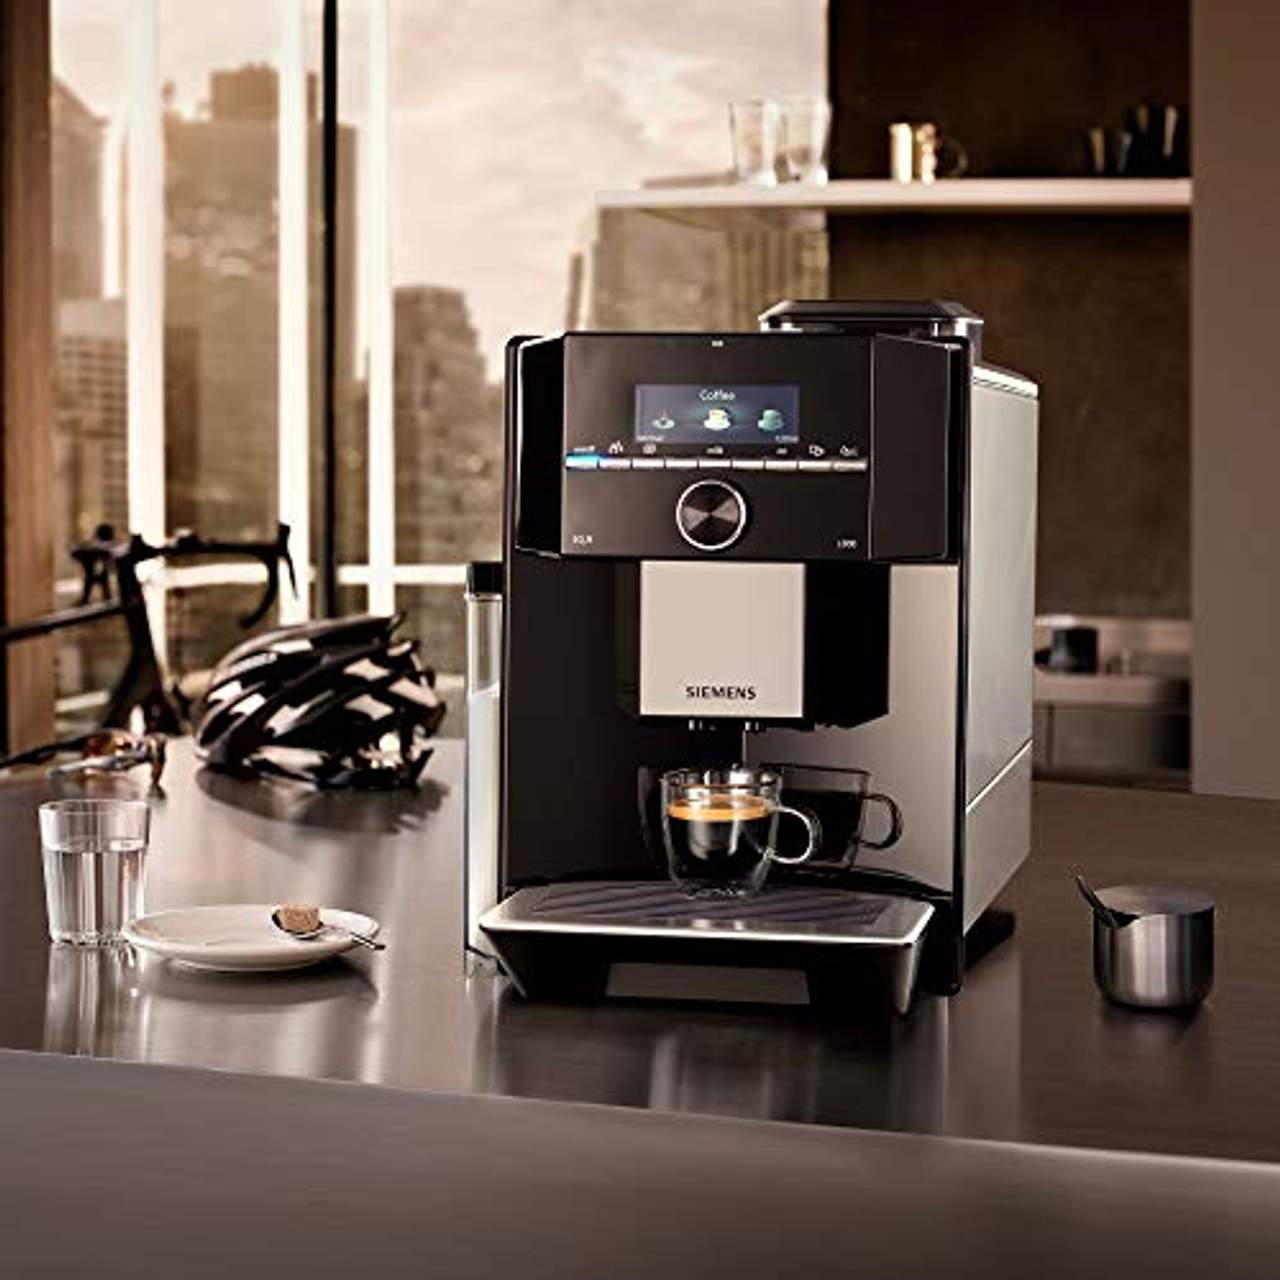 Siemens Kaffeevollautomat EQ.9 s300 